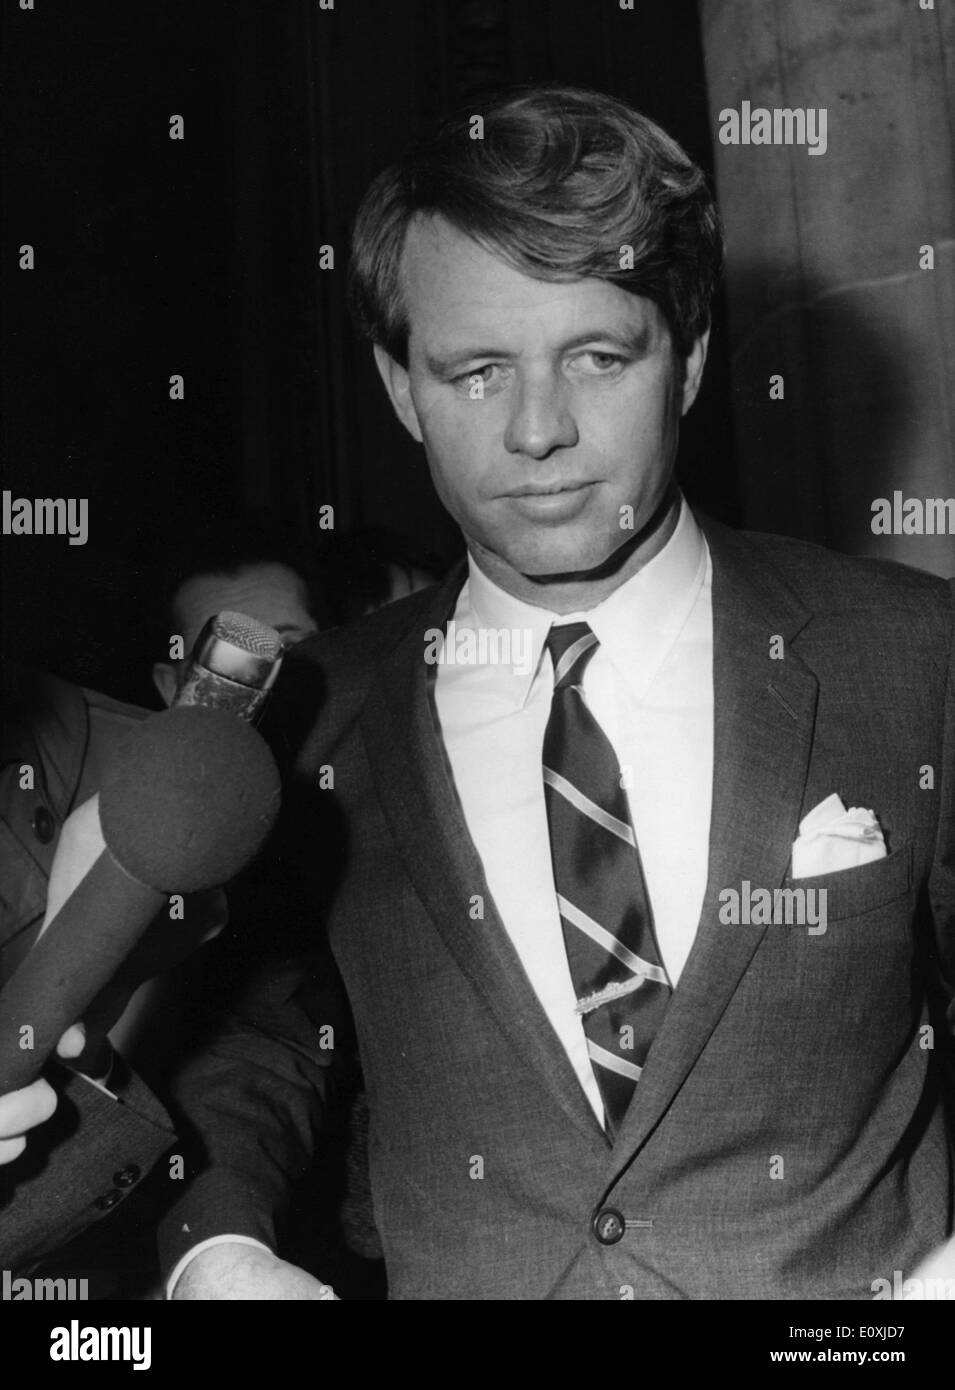 Il senatore Robert F. Kennedy intervistato da premere Foto Stock